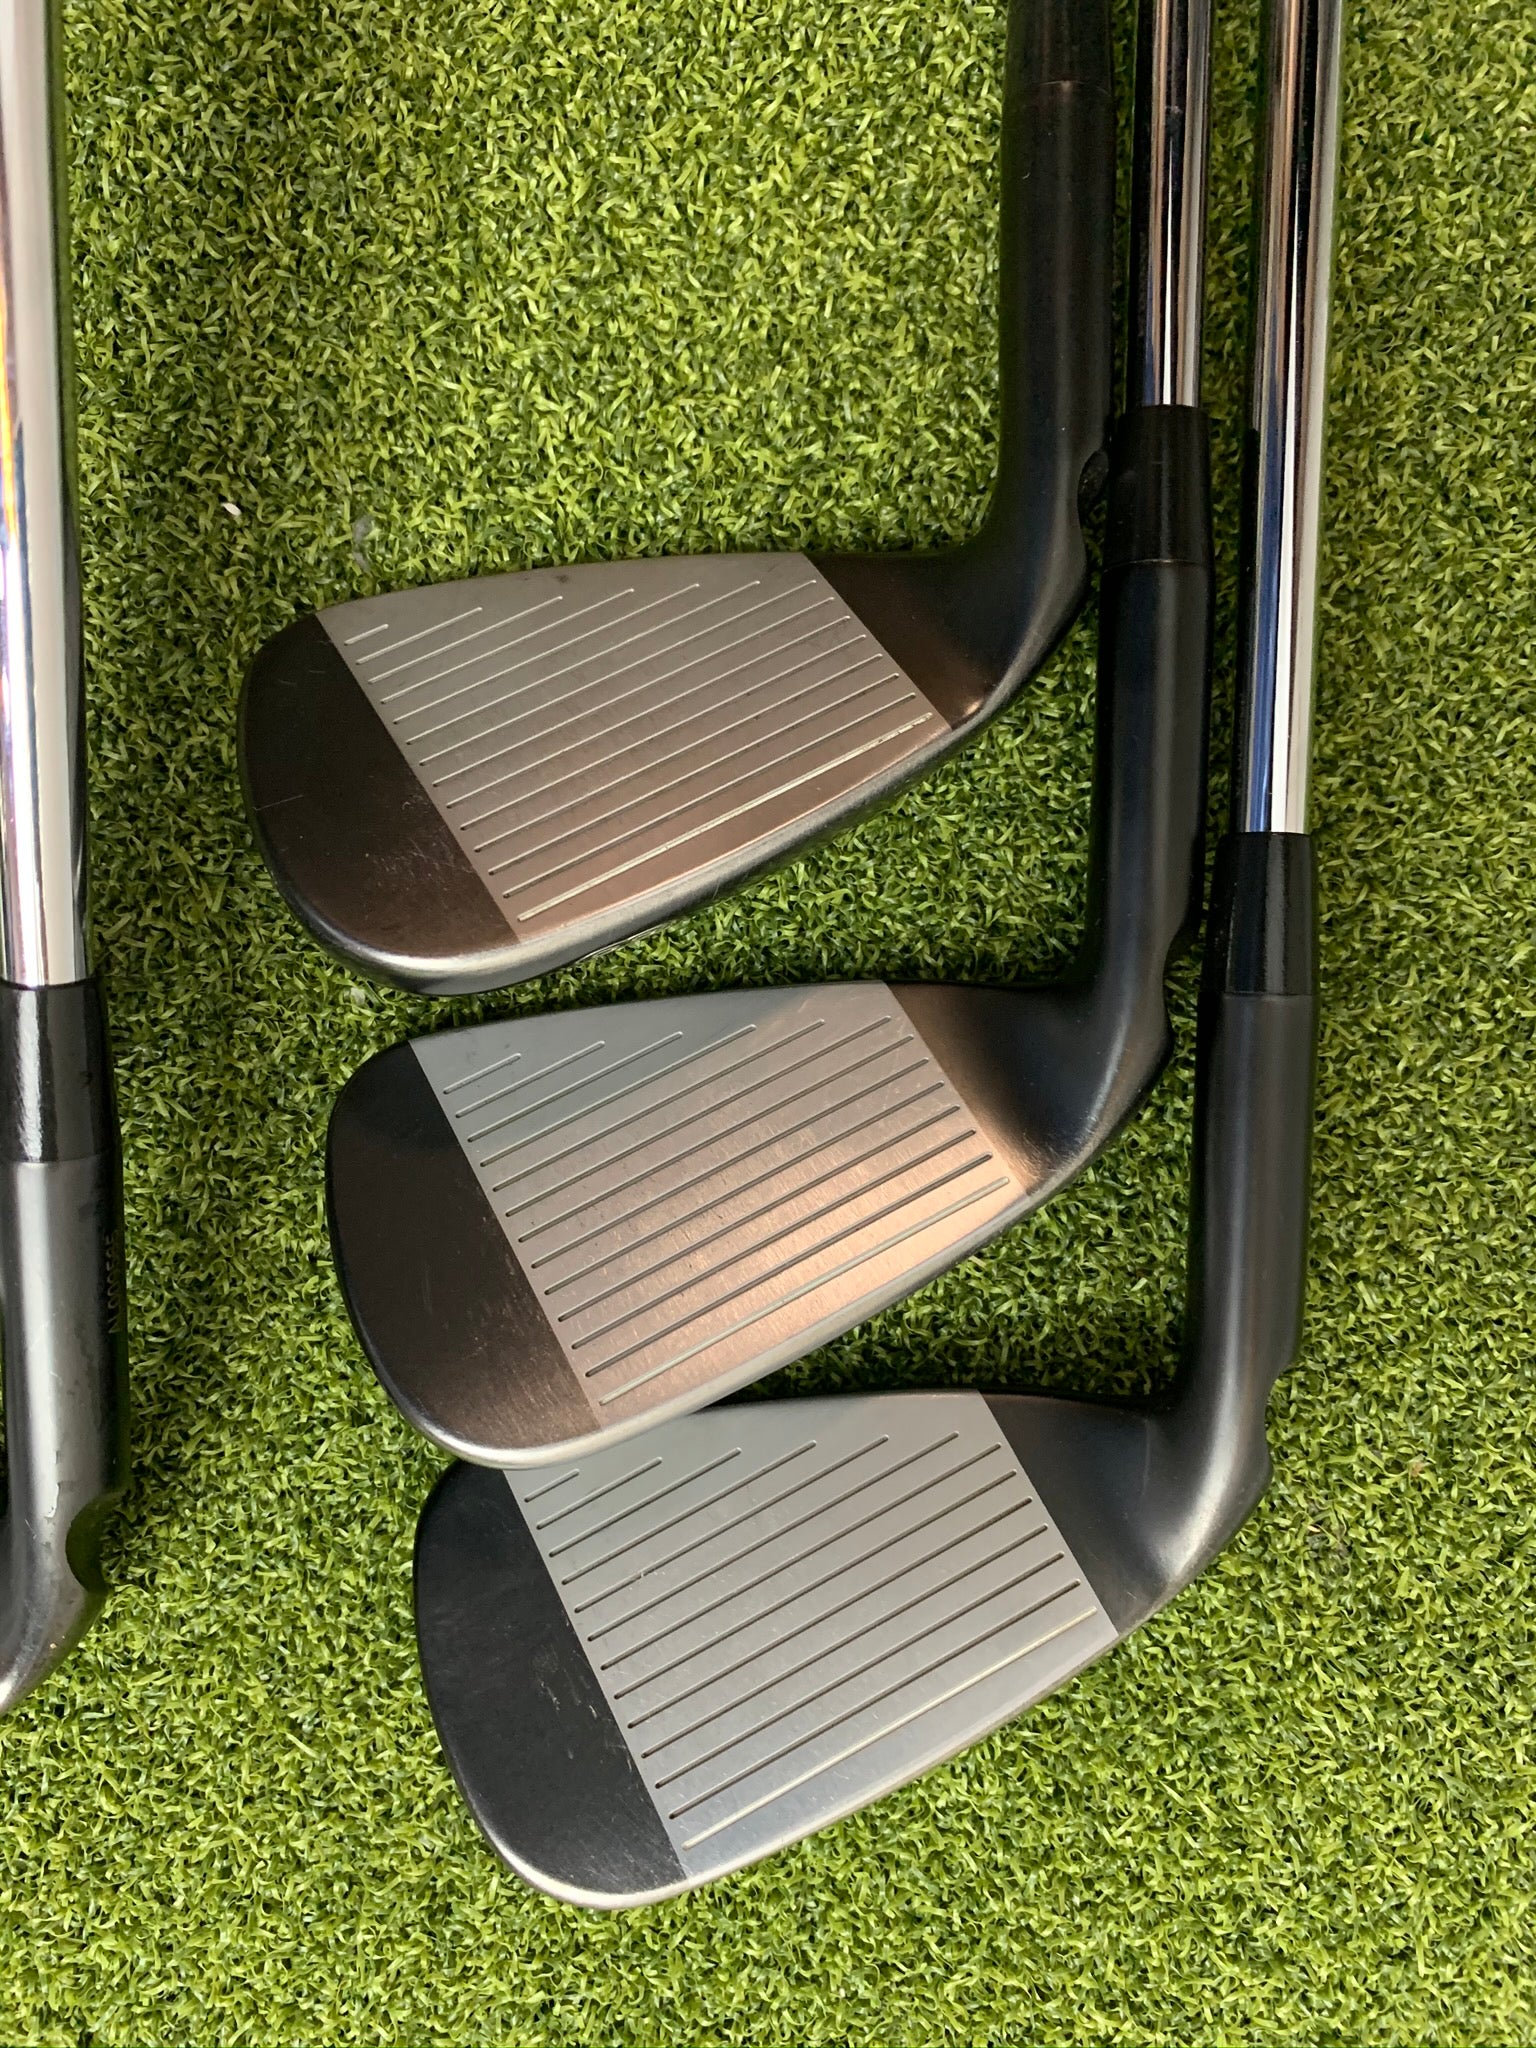 Ping G710 6-PW Iron Set- Bogies R Us Golf Shop